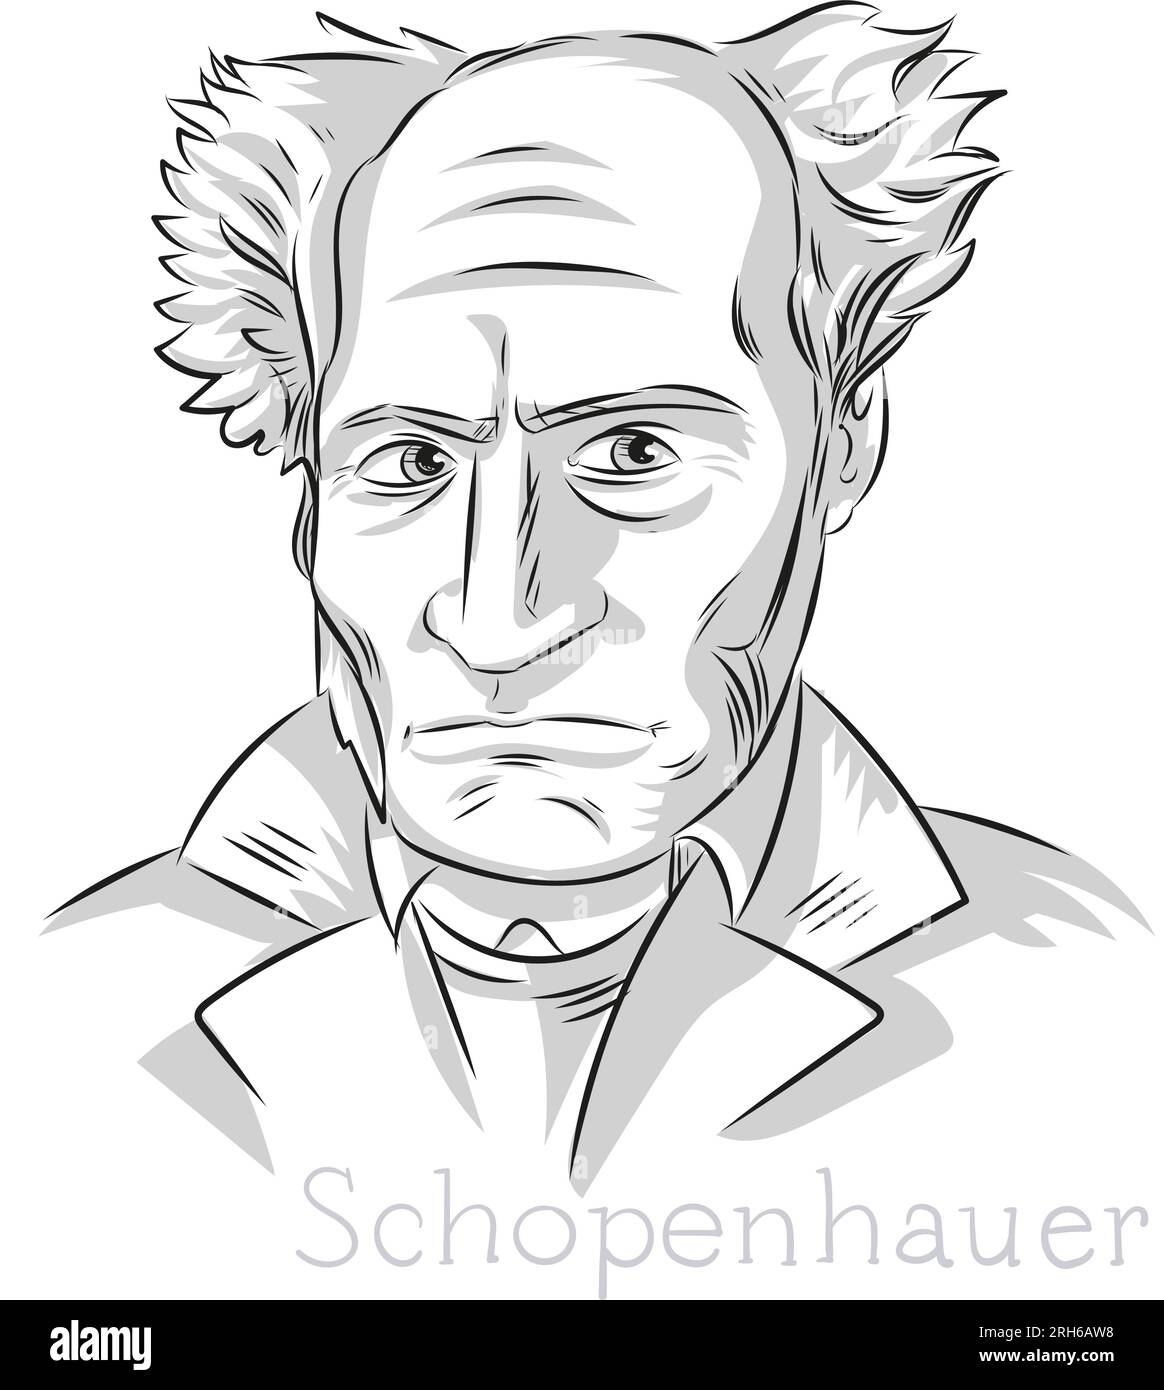 Schopenhauer Philosoph handgezeichnete Linien Kunst Porträt Illustration Stock Vektor